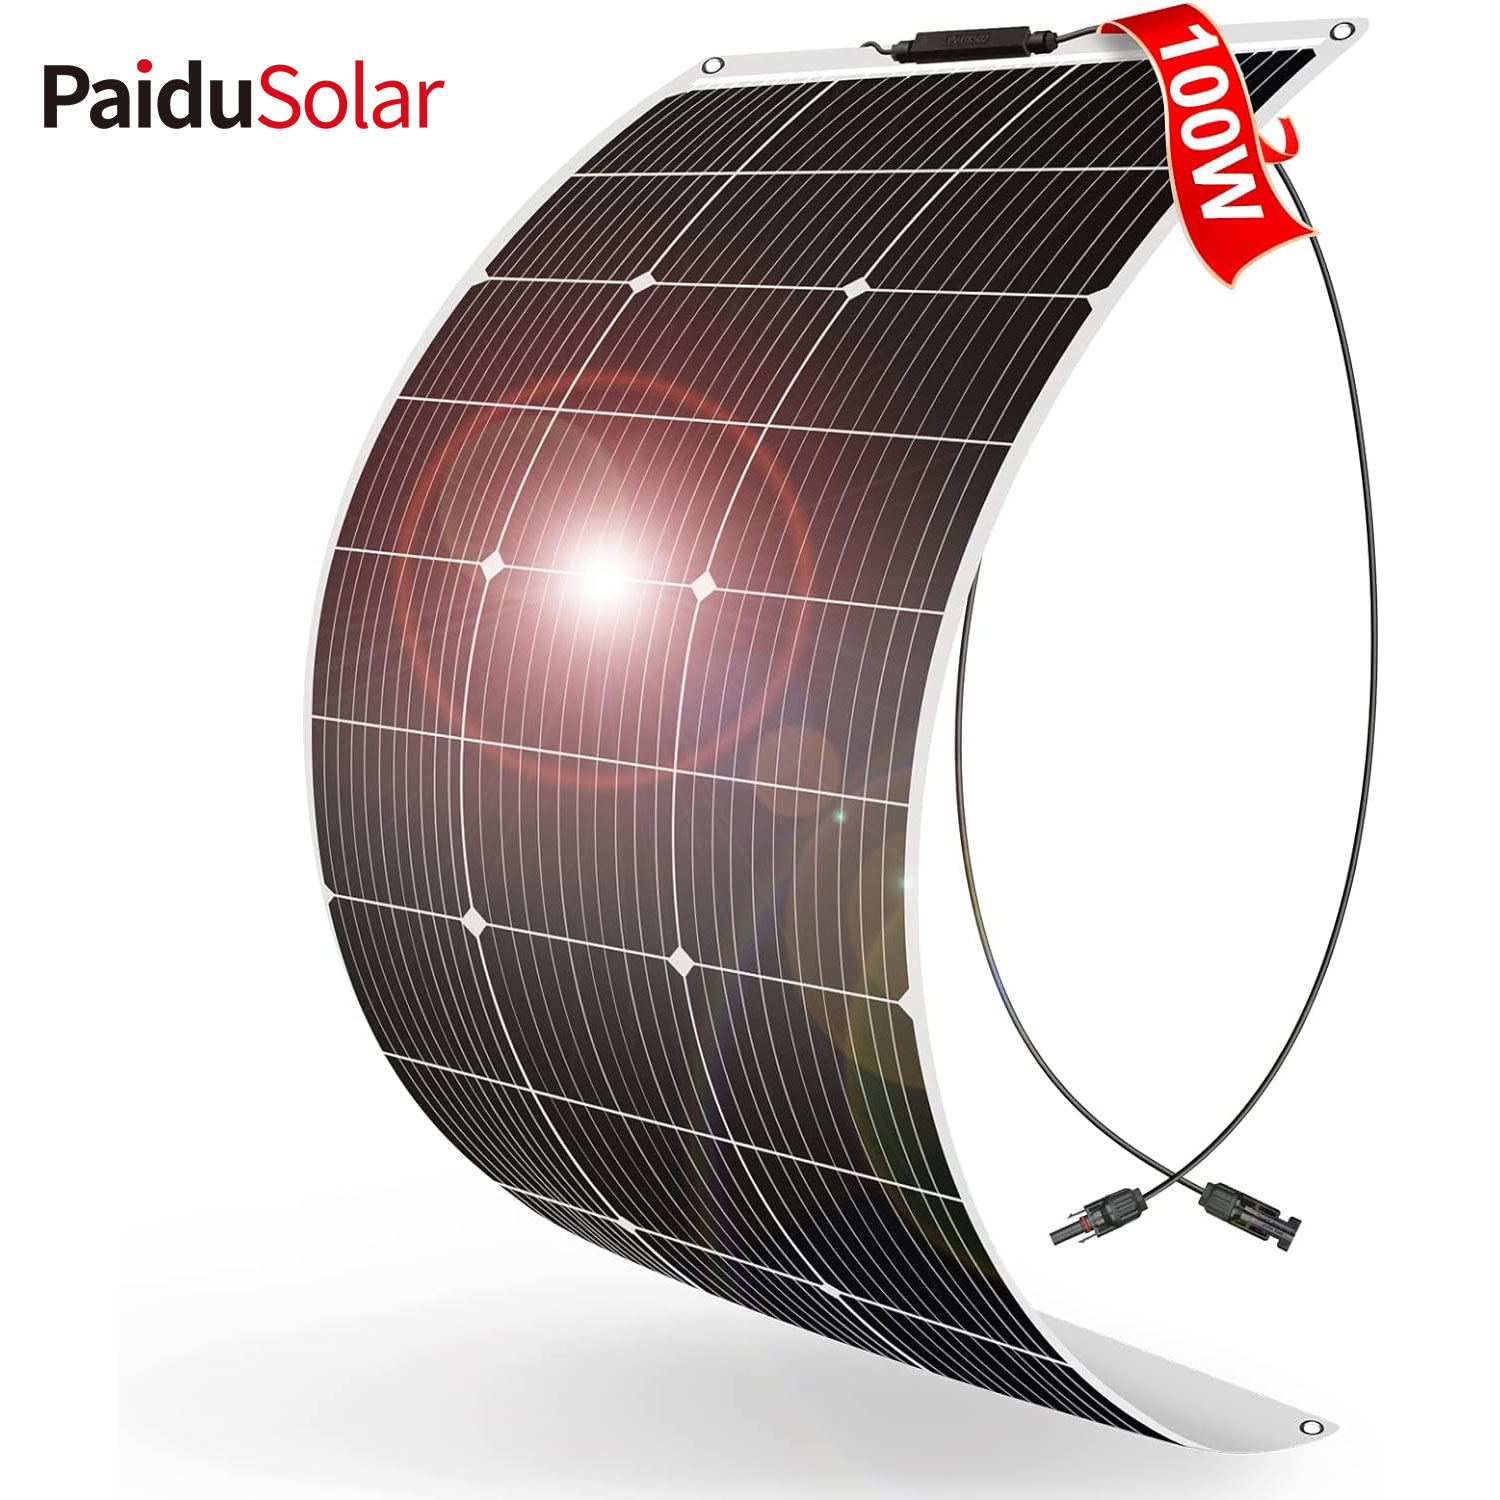 PaiduSolar 100W 12V Гибкая полугибкая солнечная панель для каравана, лодки, кемпера, прицепа